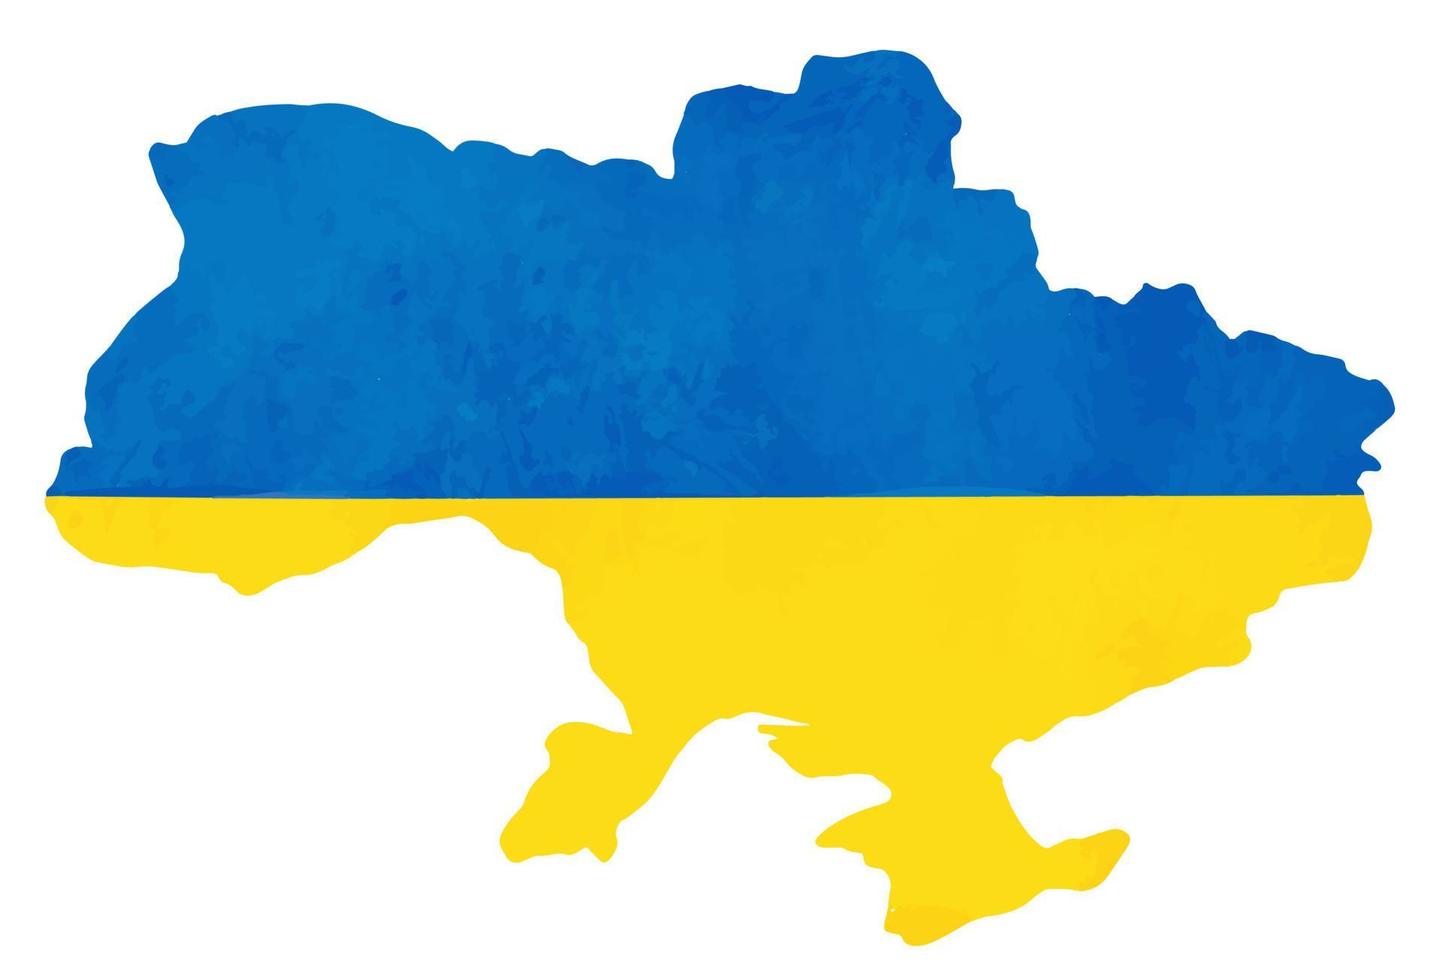 símbolo de ícone de vetor da república da ucrânia. ilustração do conceito de paz e guerra. povo ucraniano de nacionalidade oficial ou rótulo de bandeira. cor amarela e azul para a bandeira da ucrânia.